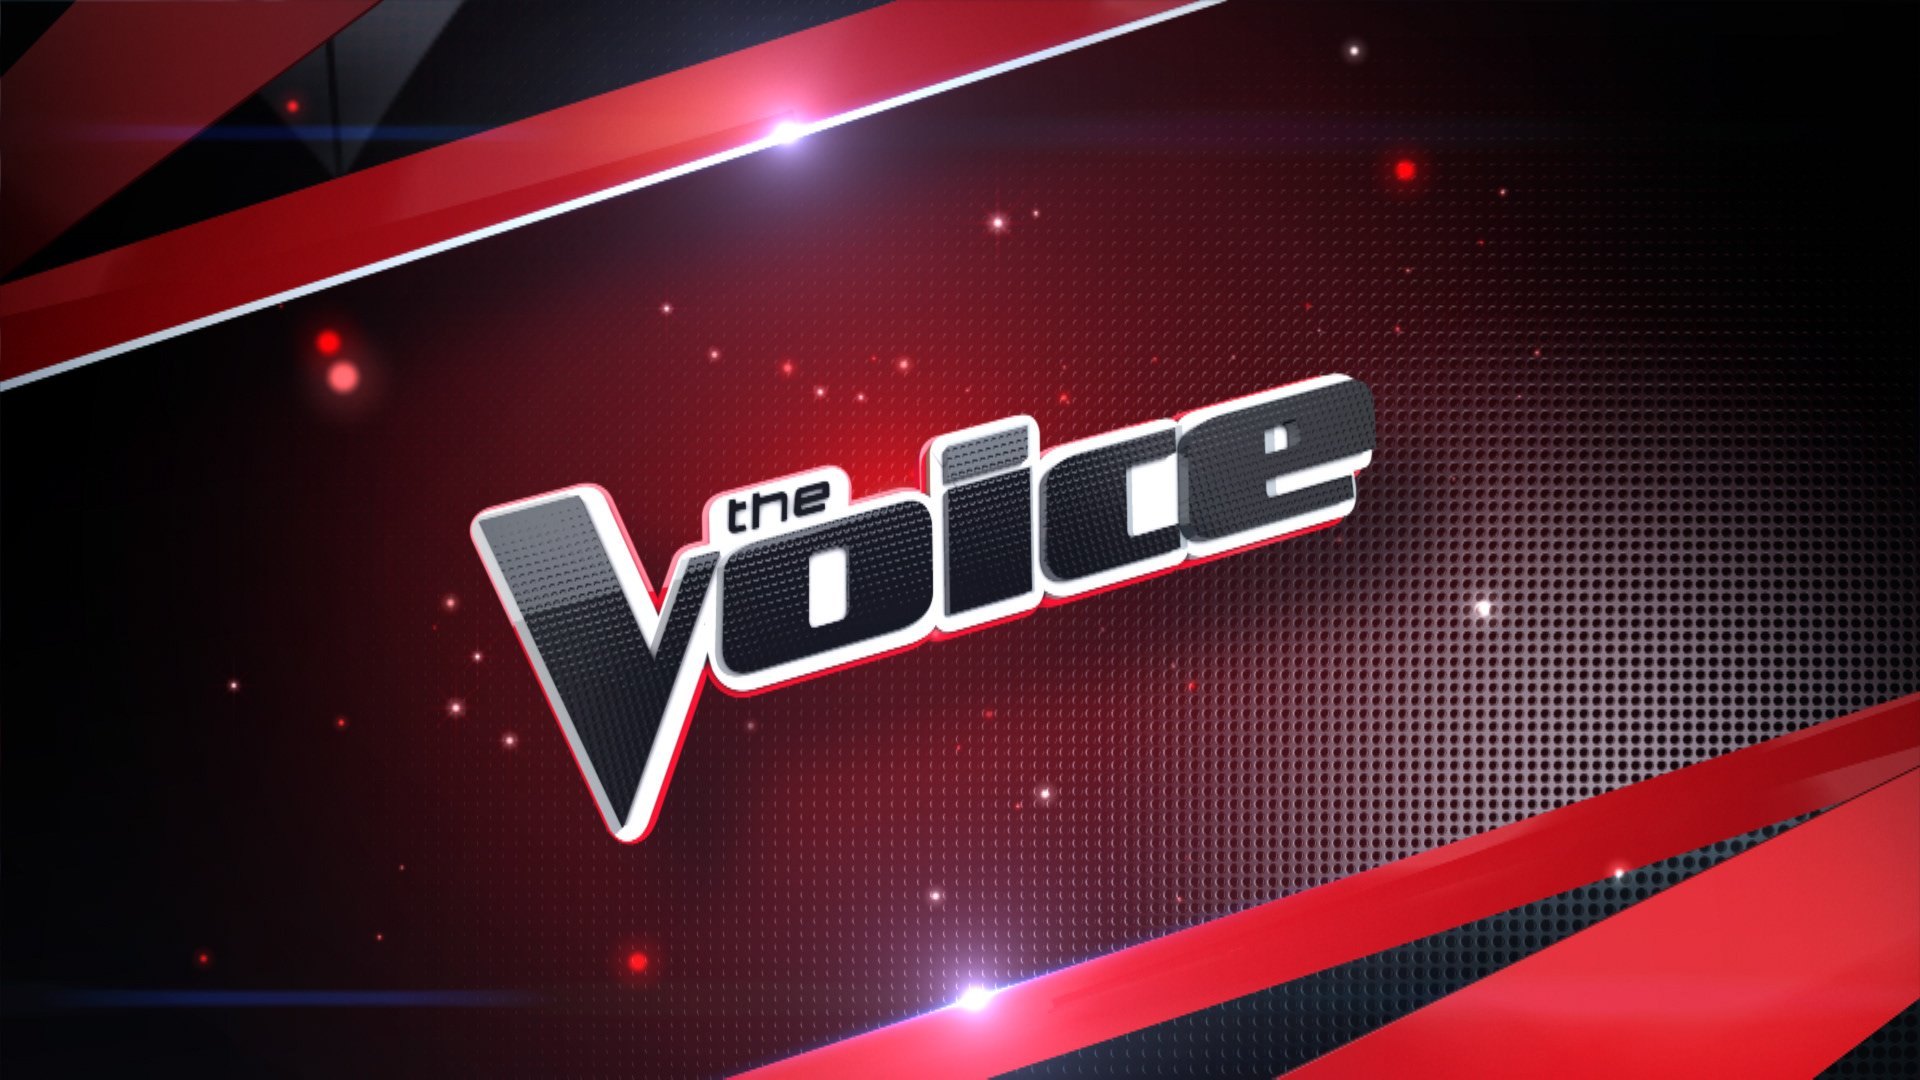 Voice. Шоу голос. The Voices. Шоу голос заставка. Voice логотип.